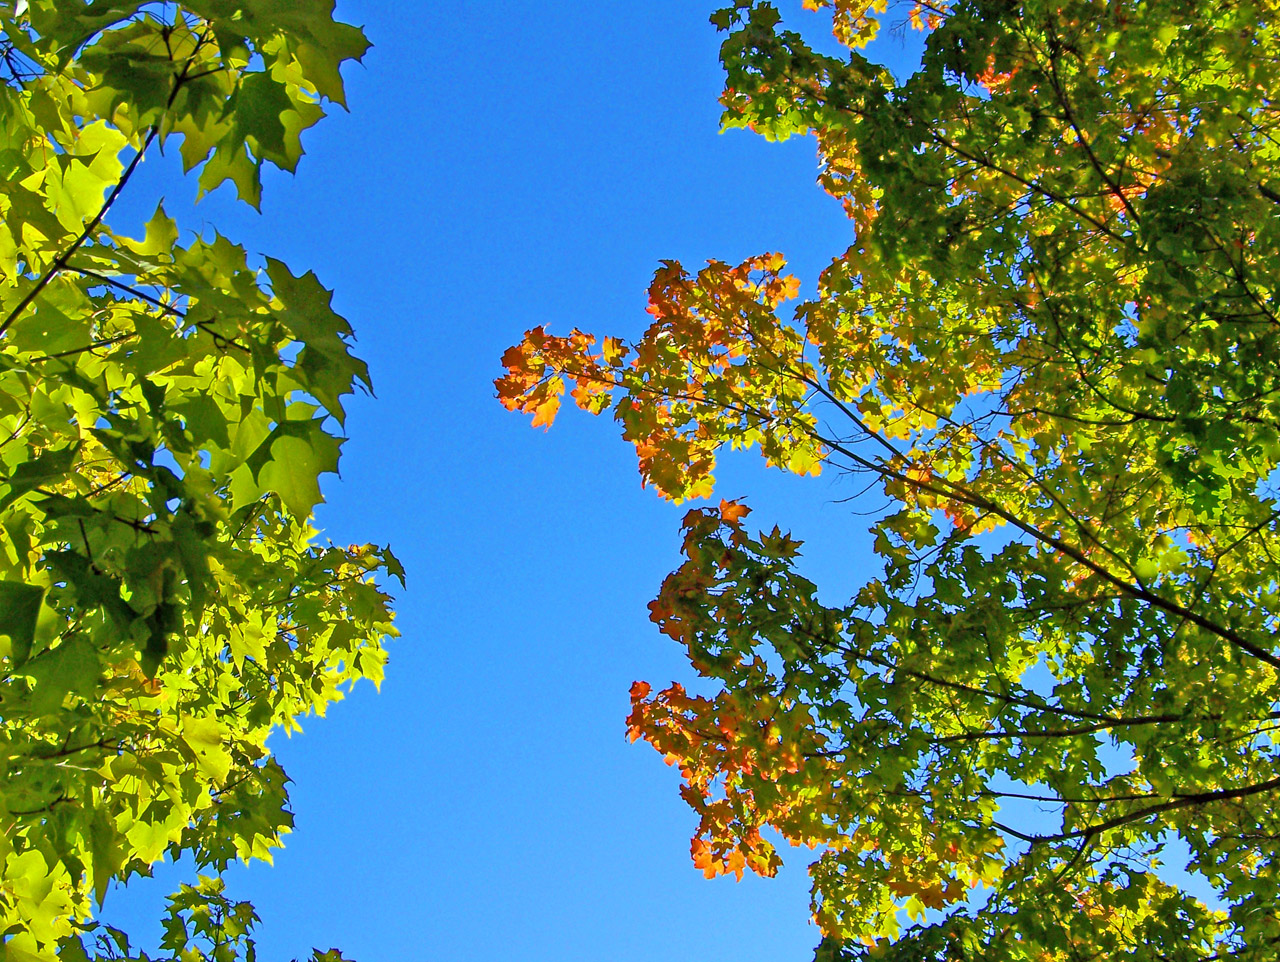 秋叶和蓝天